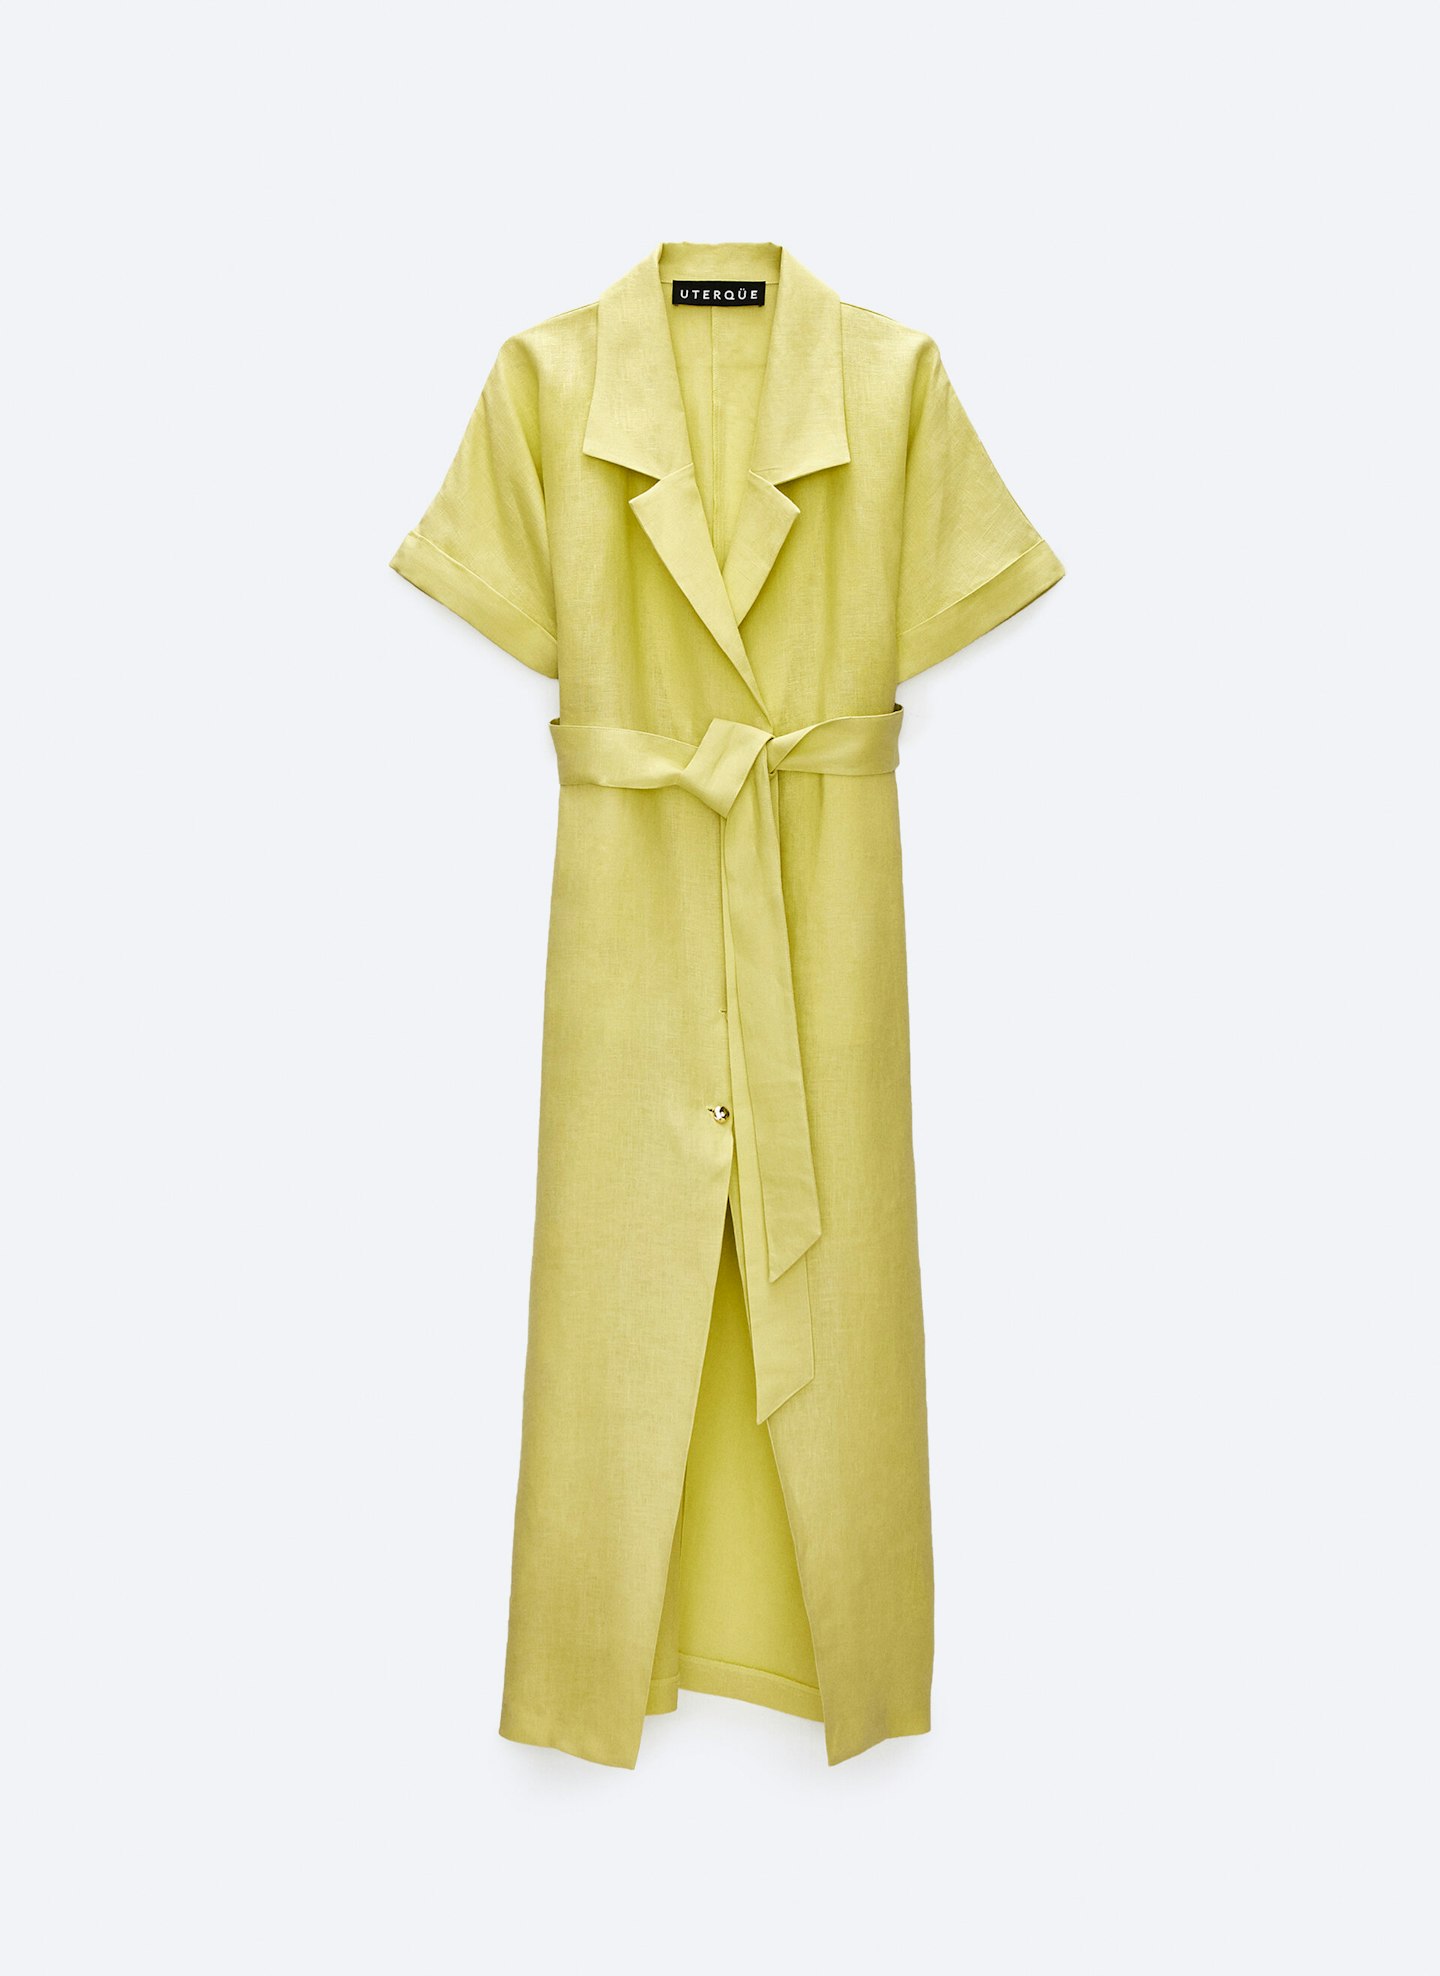 Uterqu00fce, Linen Shirt Dress, £155